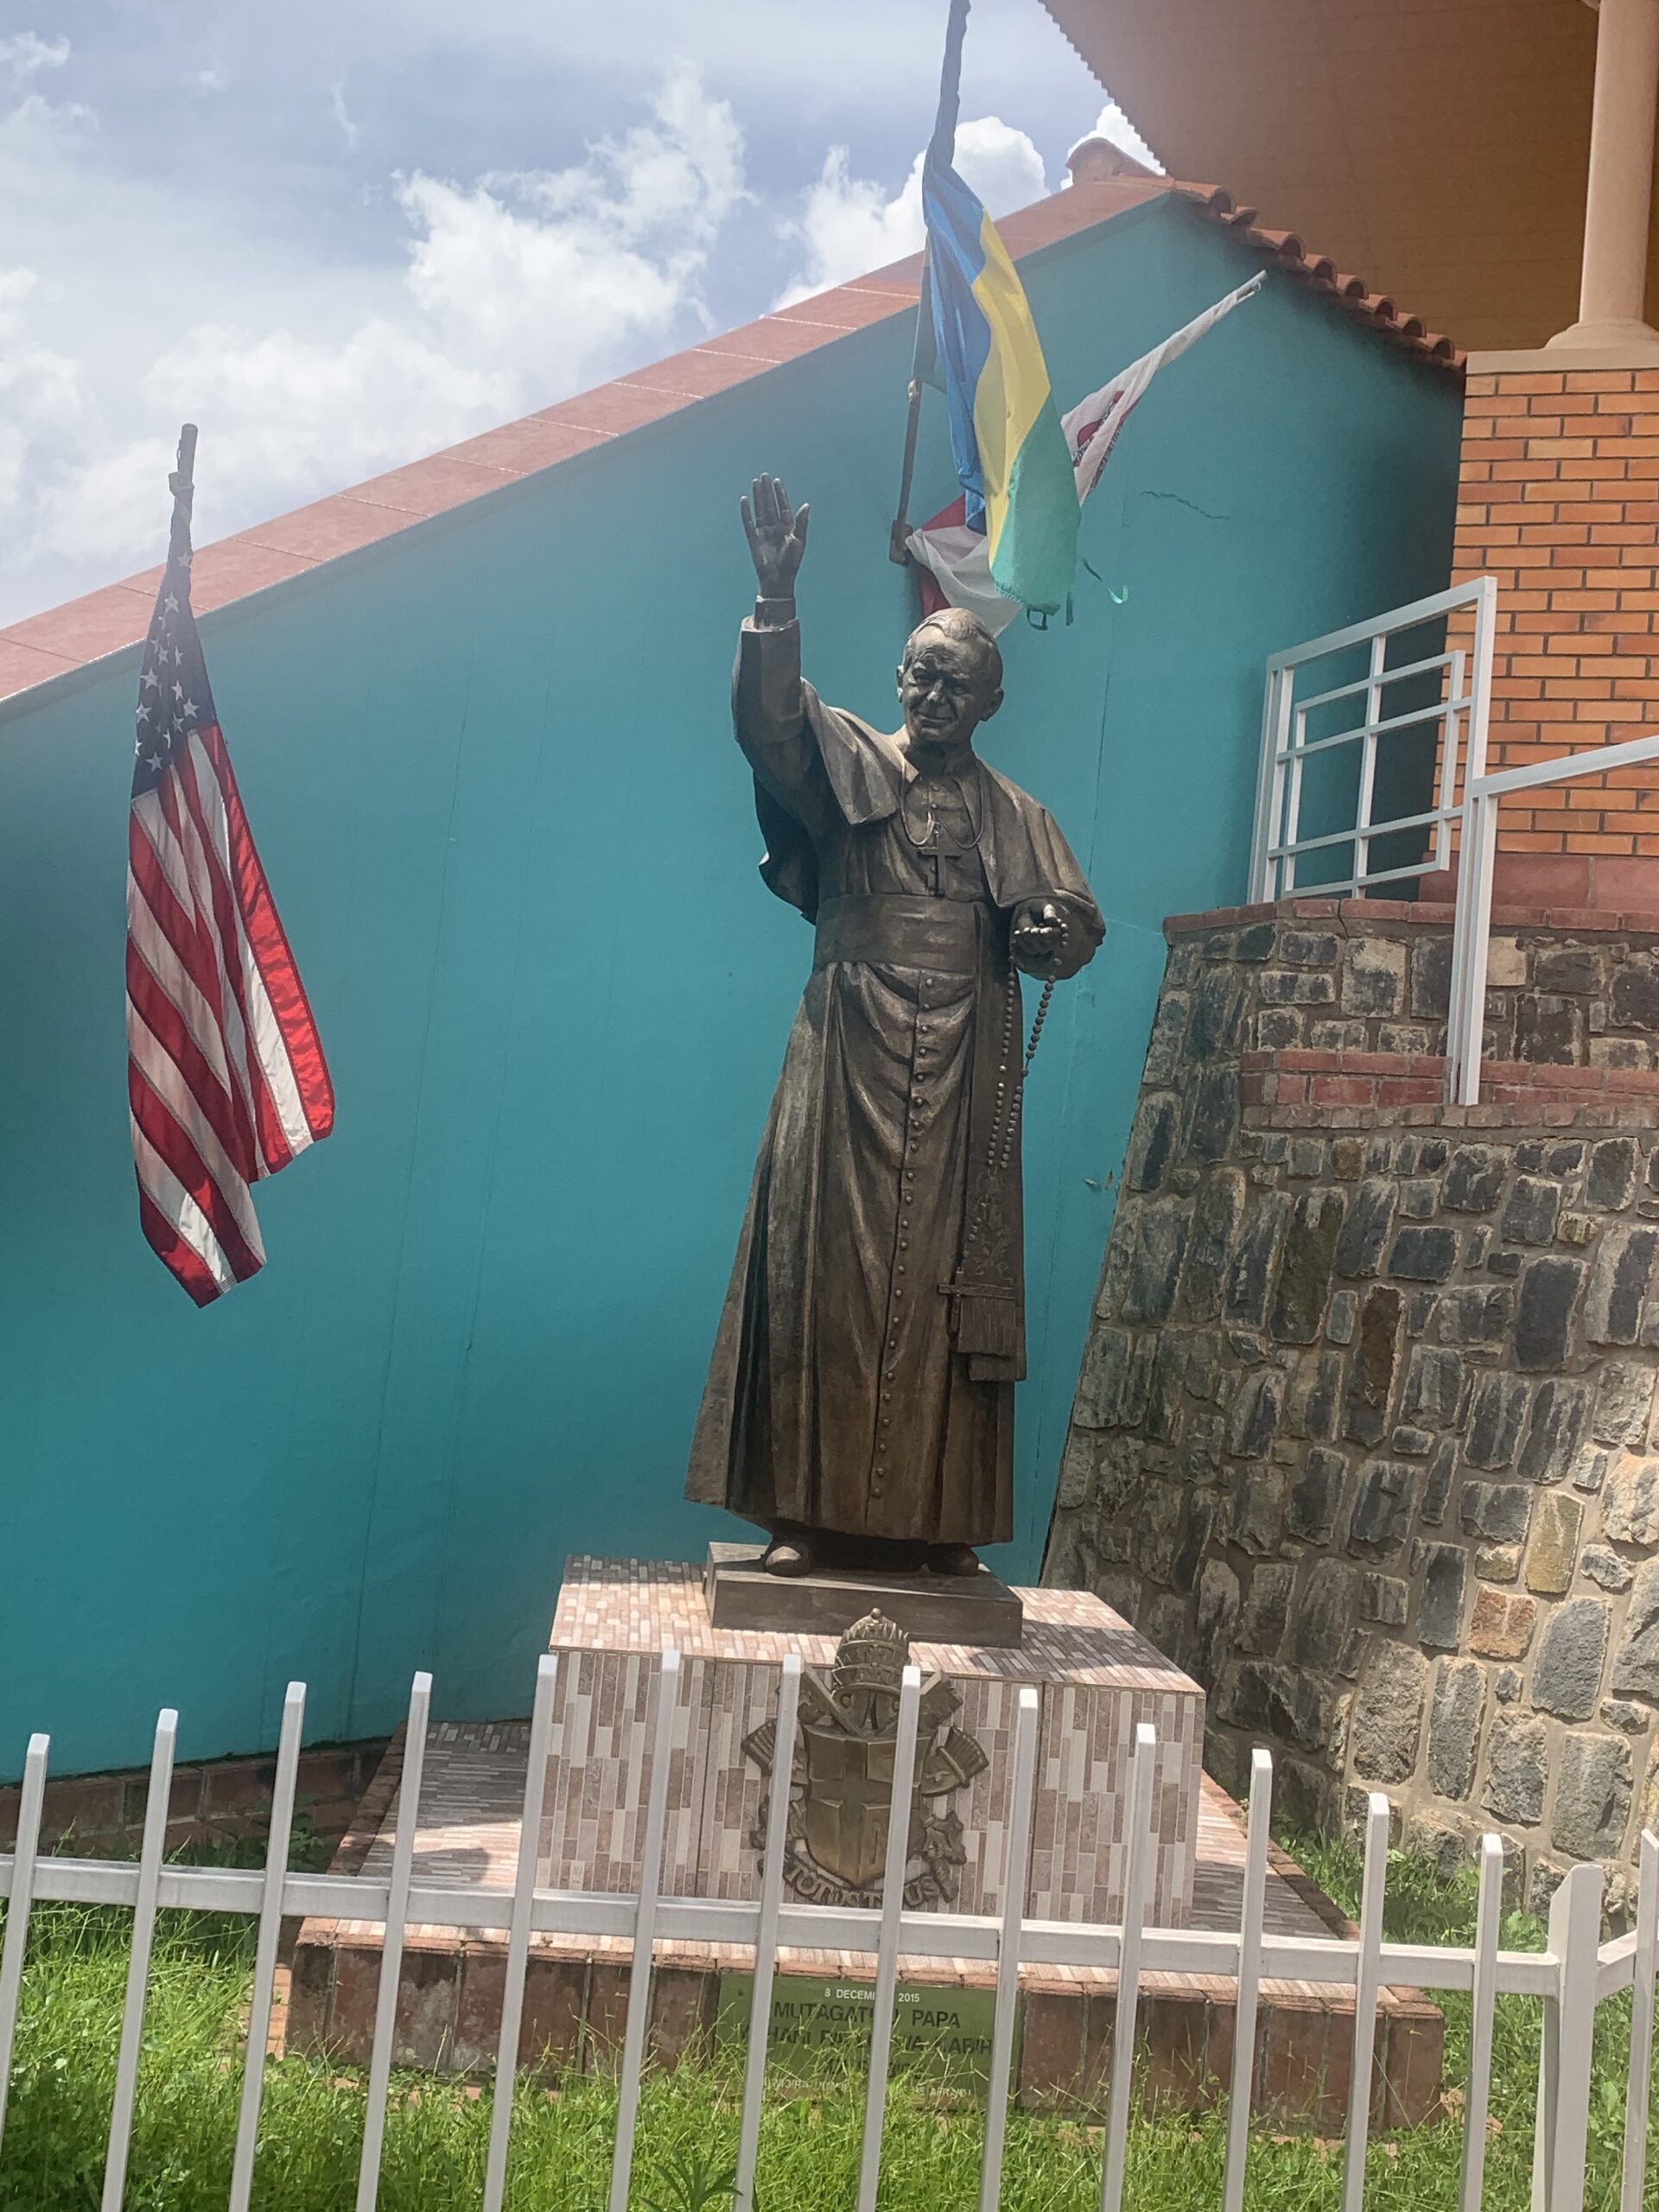 Rwanda Religious Tour and Kibeho Holy Land